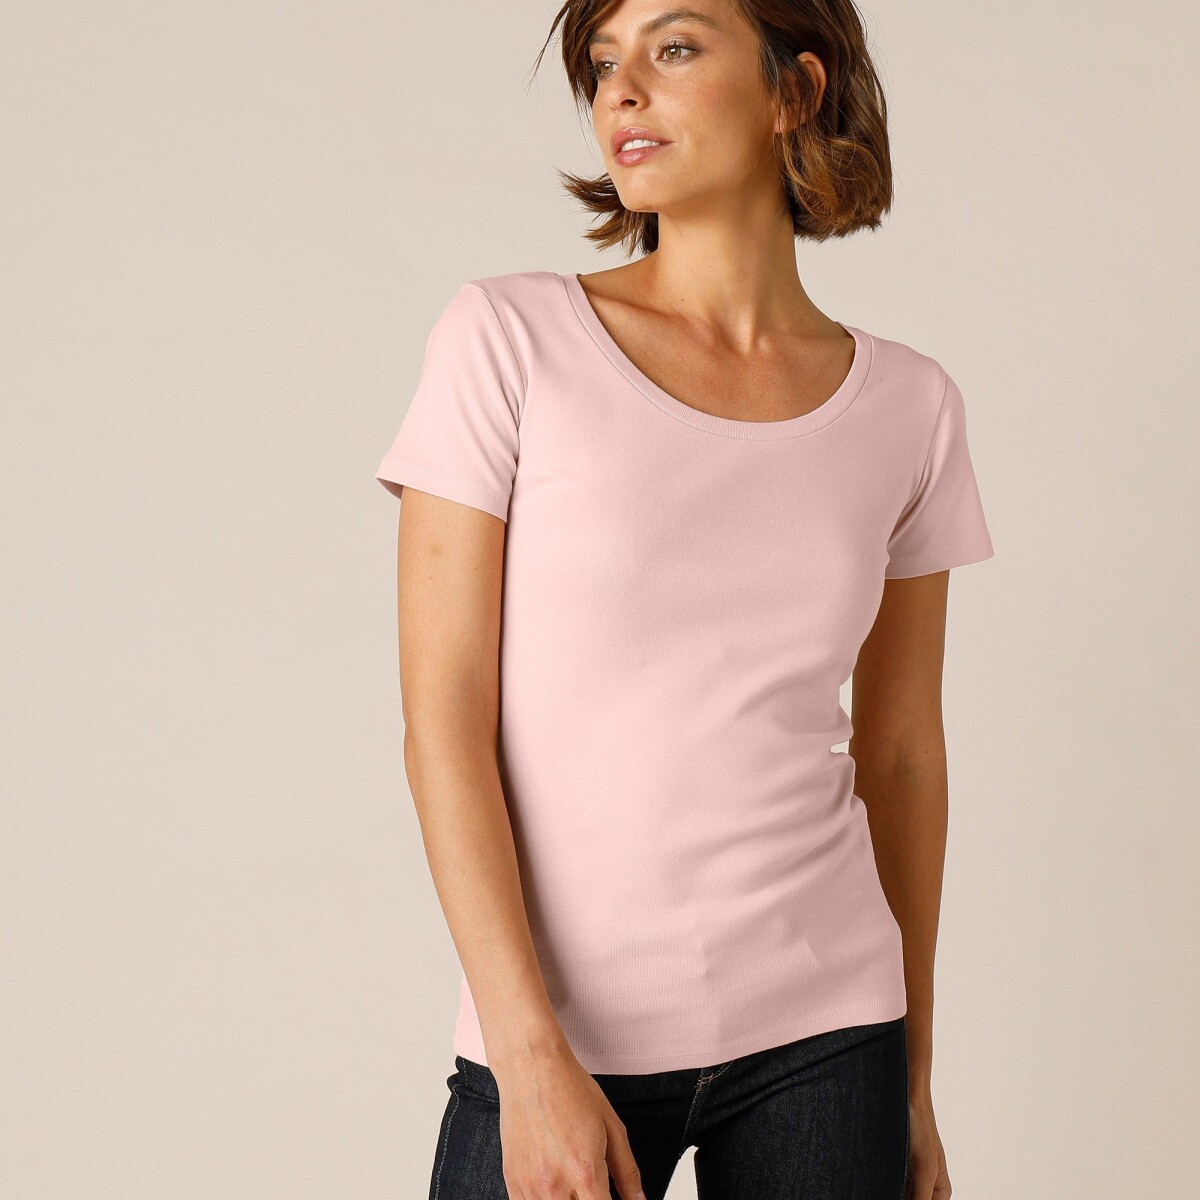 Jednofarebné tričko s krátkymi rukávmi, bio bavlna ružová pudrová 34 36